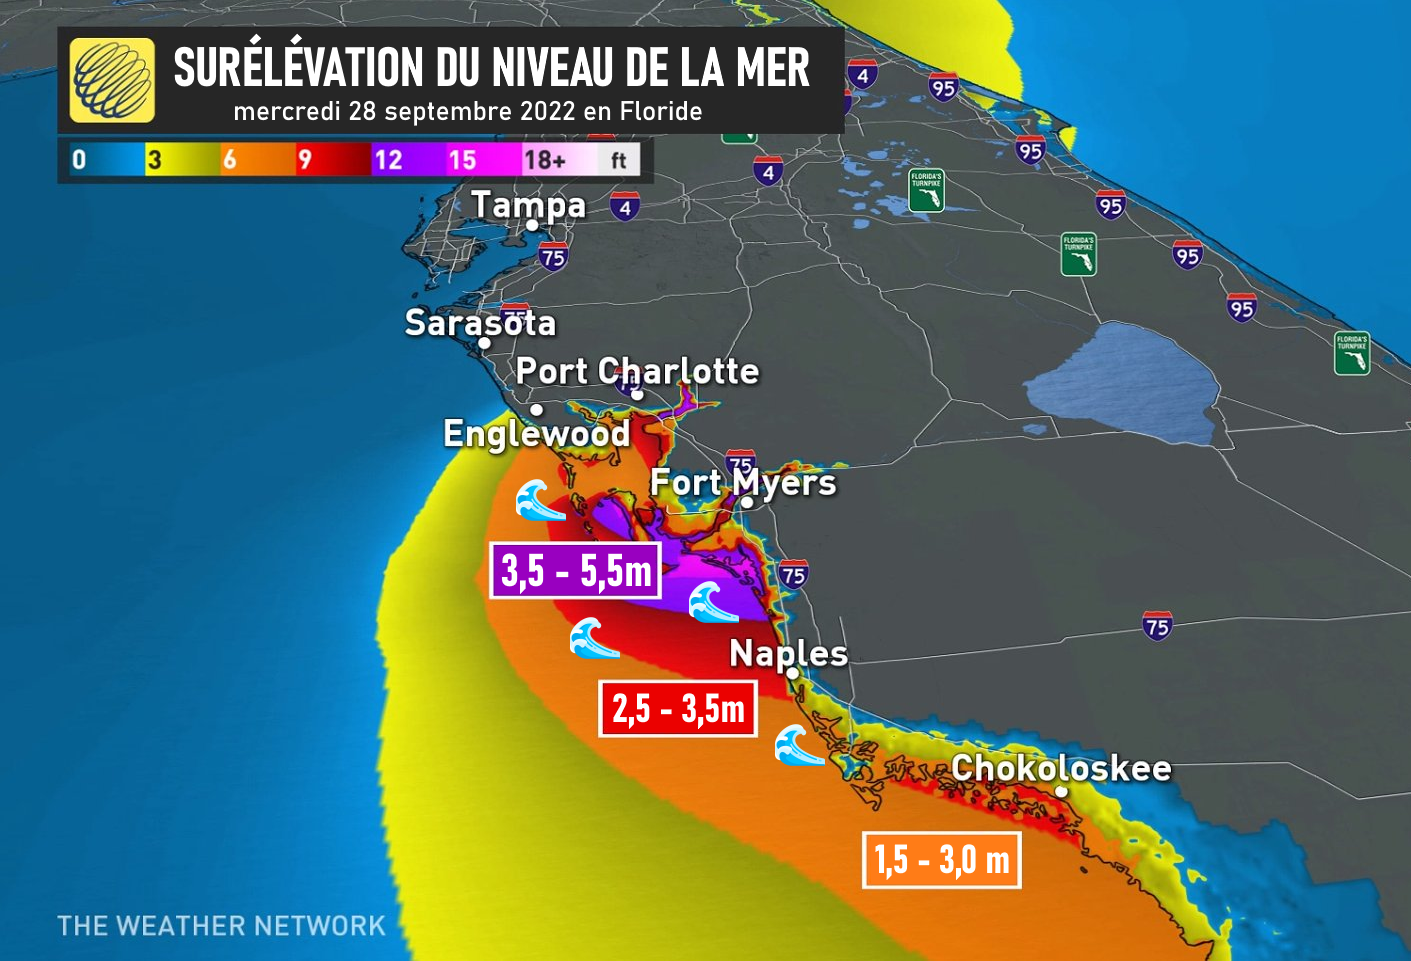 Surélévation du niveau de la mer en Floride